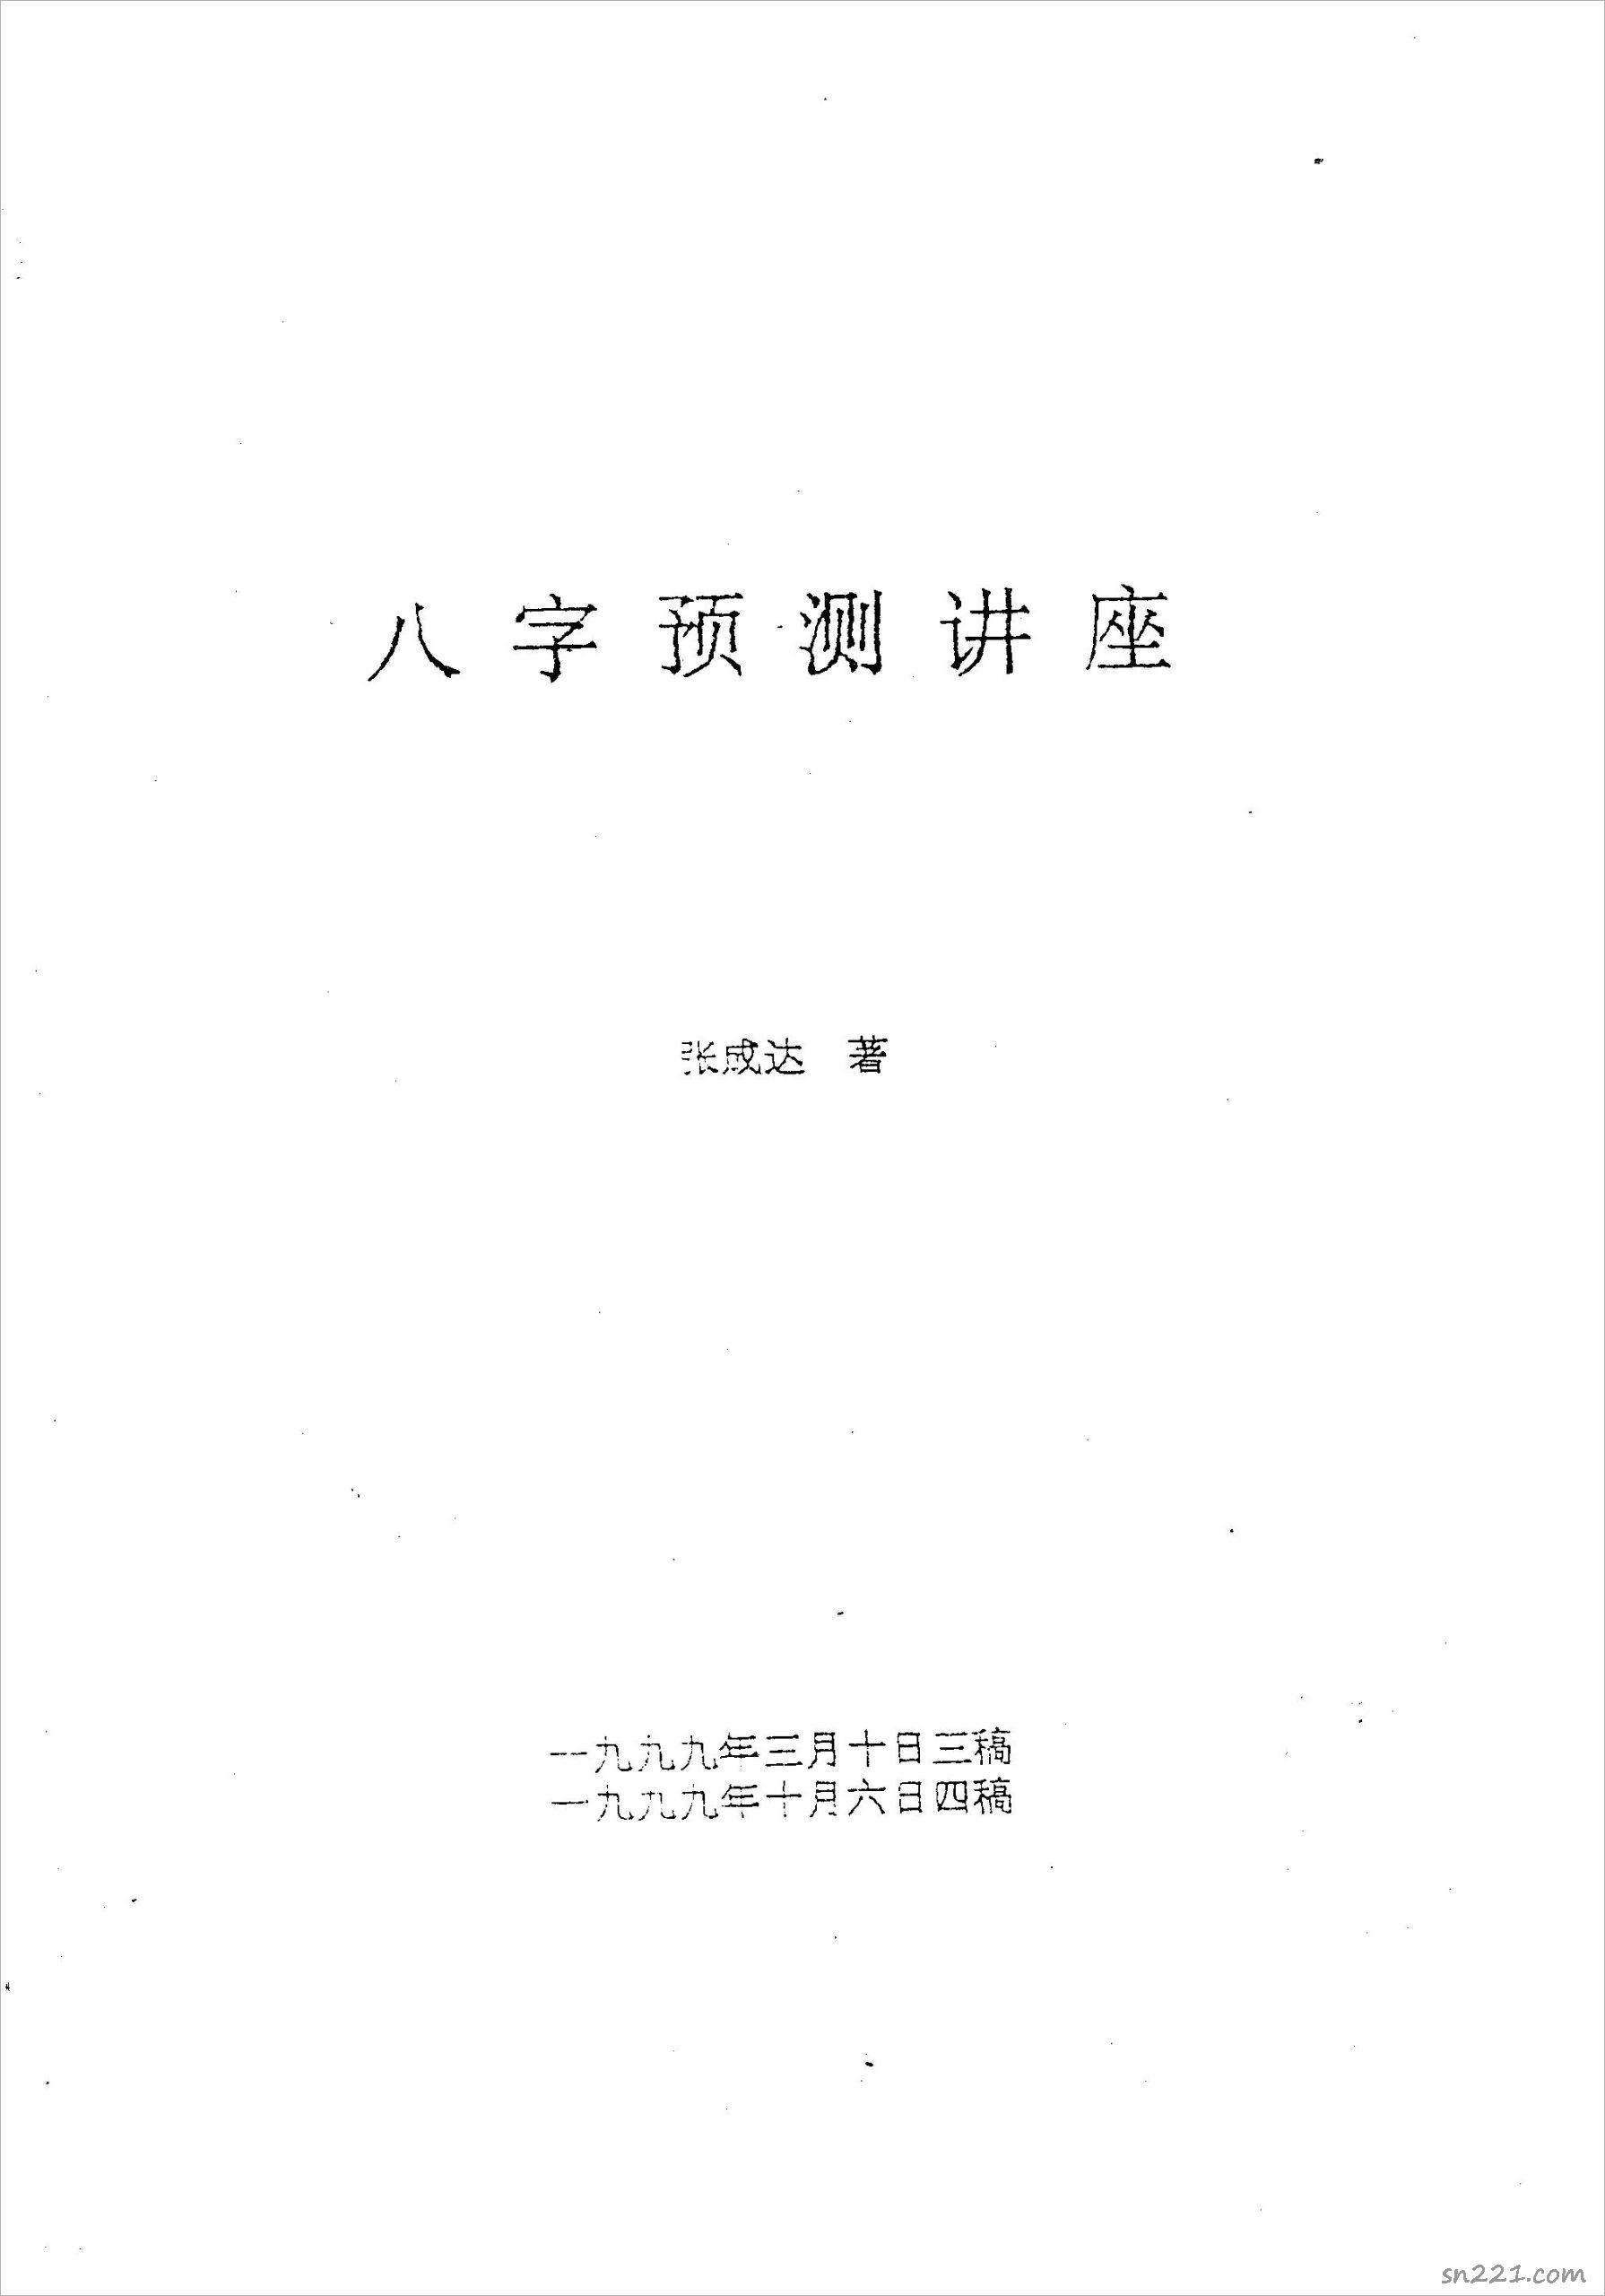 張成達-八字預測講座.pdf